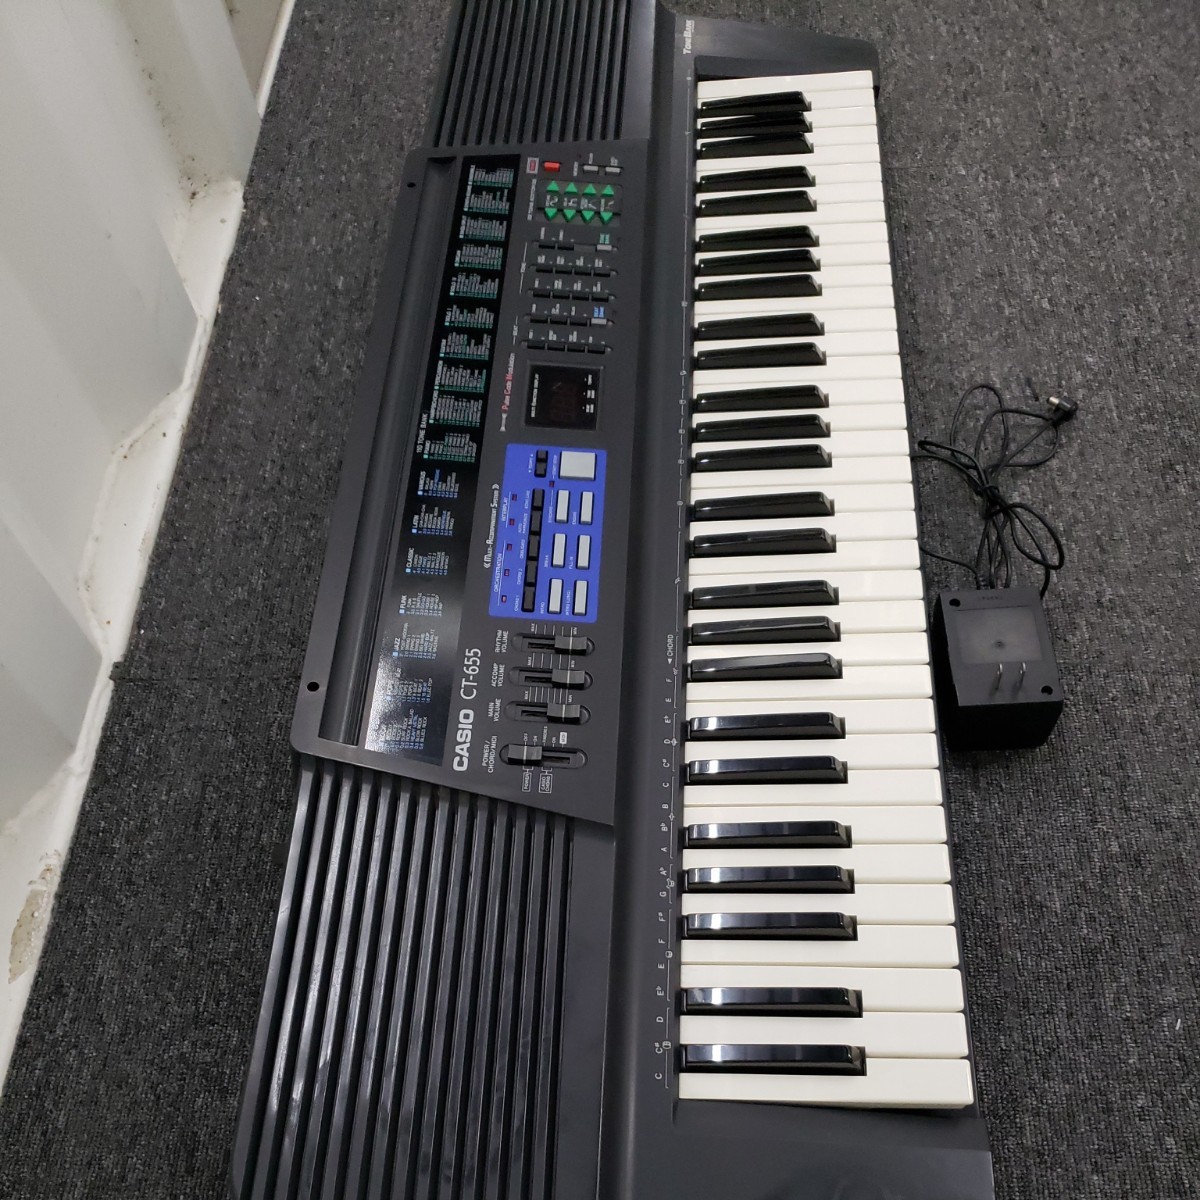 オープニングセール CASIO CT-655 カシオ 電子ピアノ キーボード 61